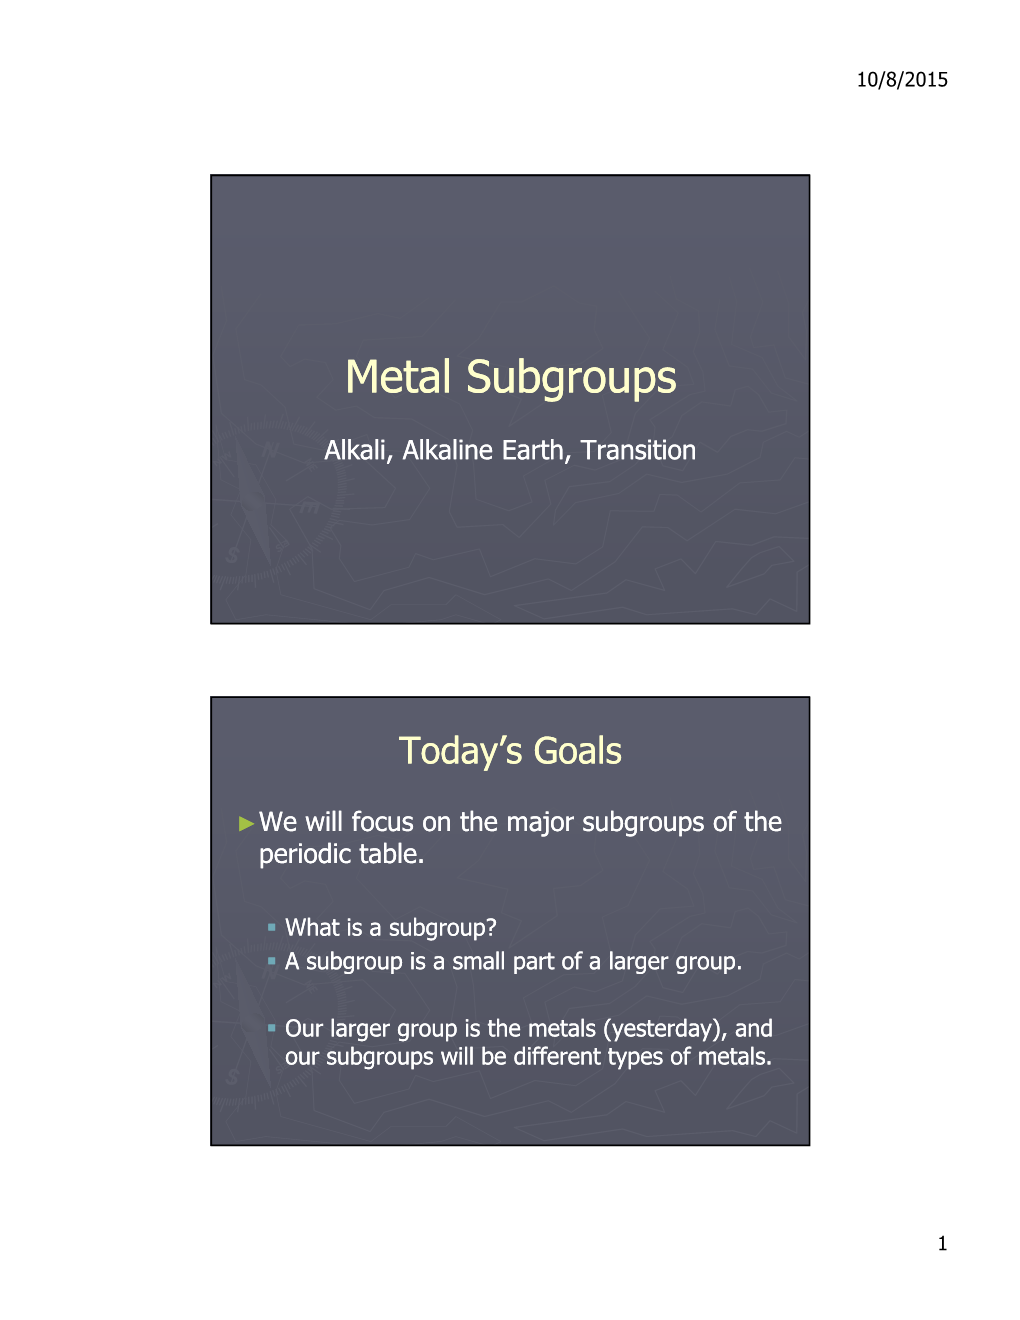 Metal Subgroups